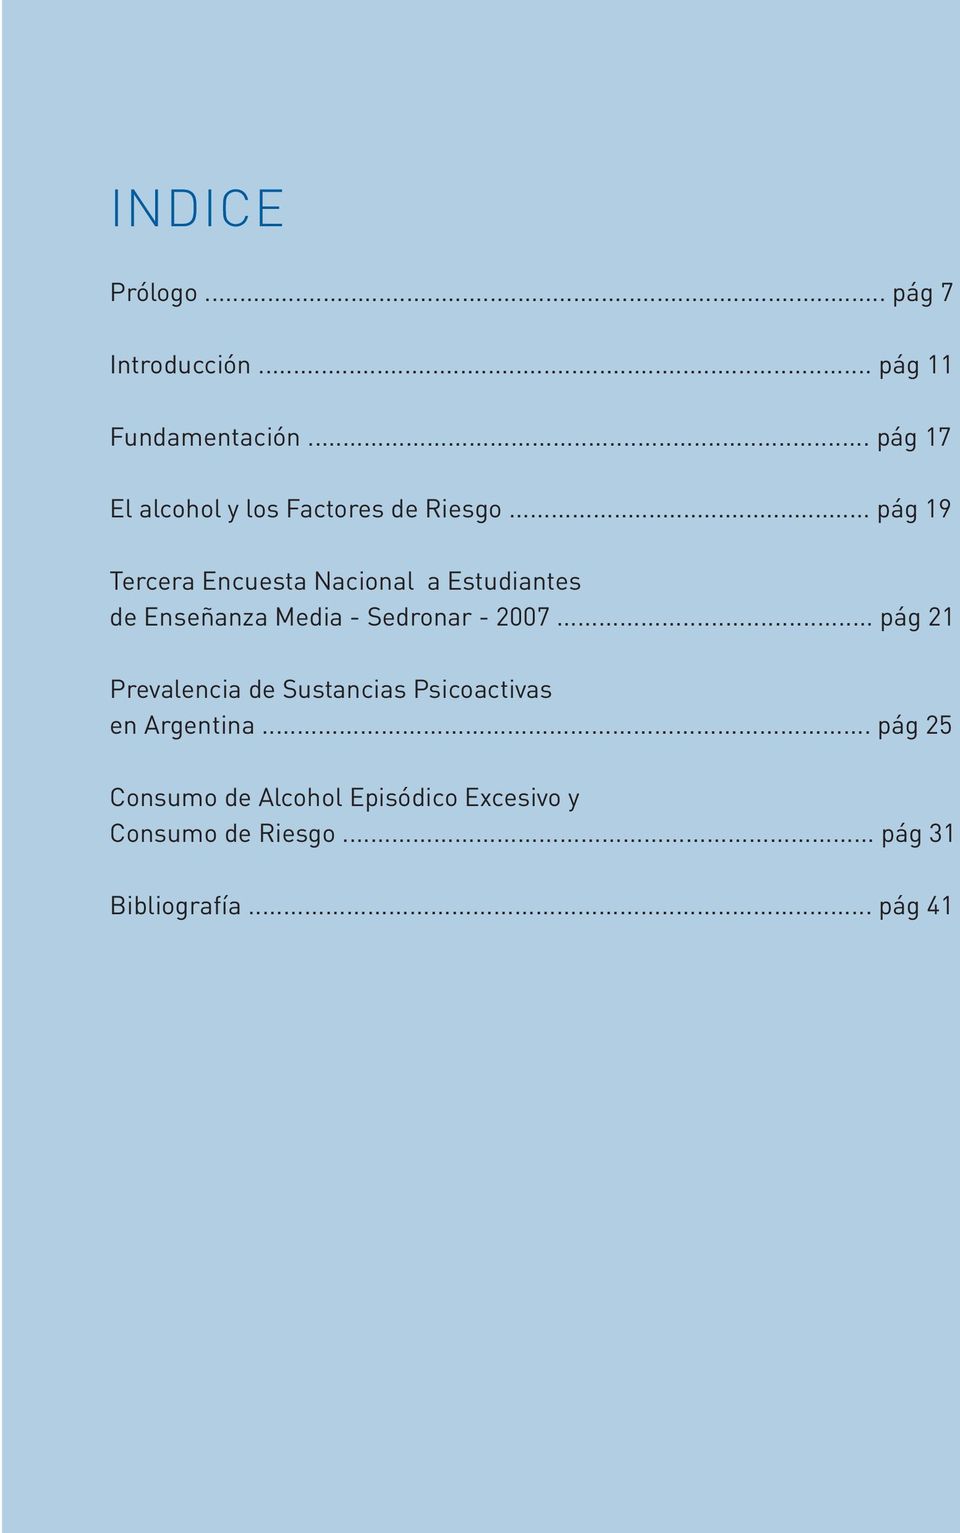 .. pág 19 Tercera Encuesta Nacional a Estudiantes de Enseñanza Media - Sedronar - 2007.